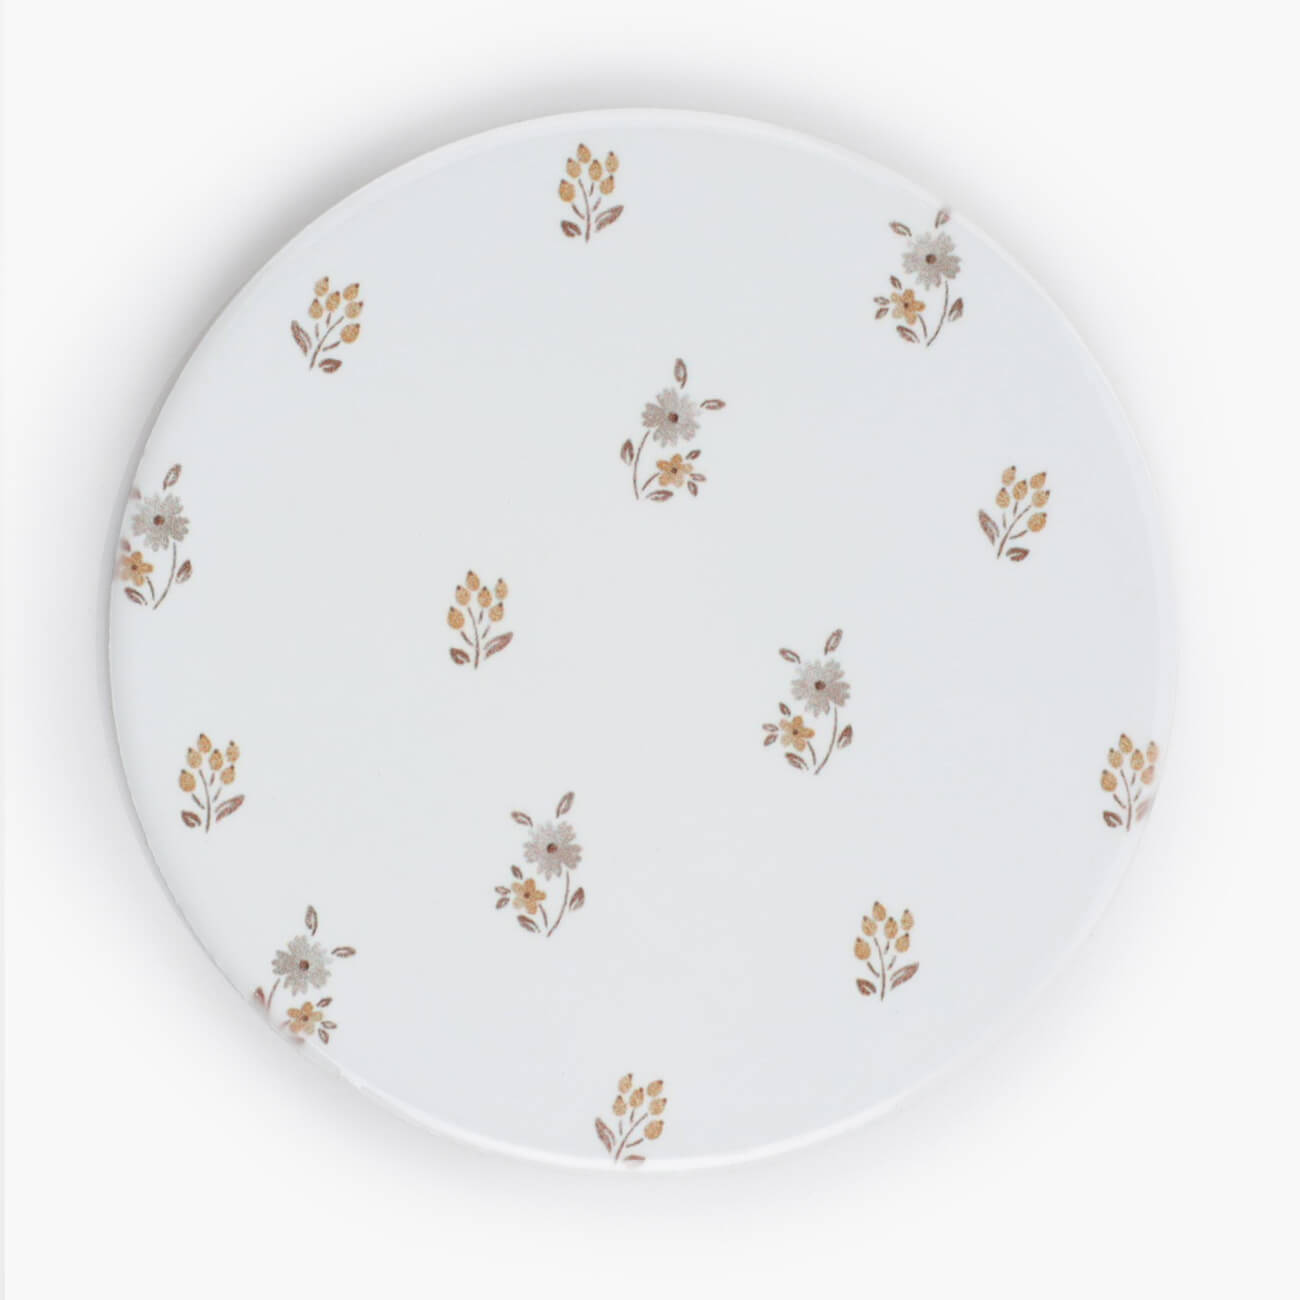 Подставка под кружку, 11 см, керамика/пробка, круглая, молочная, Винтажные цветы, La flore тарелка десертная керамика 20 см квадратная париж daniks 17 083